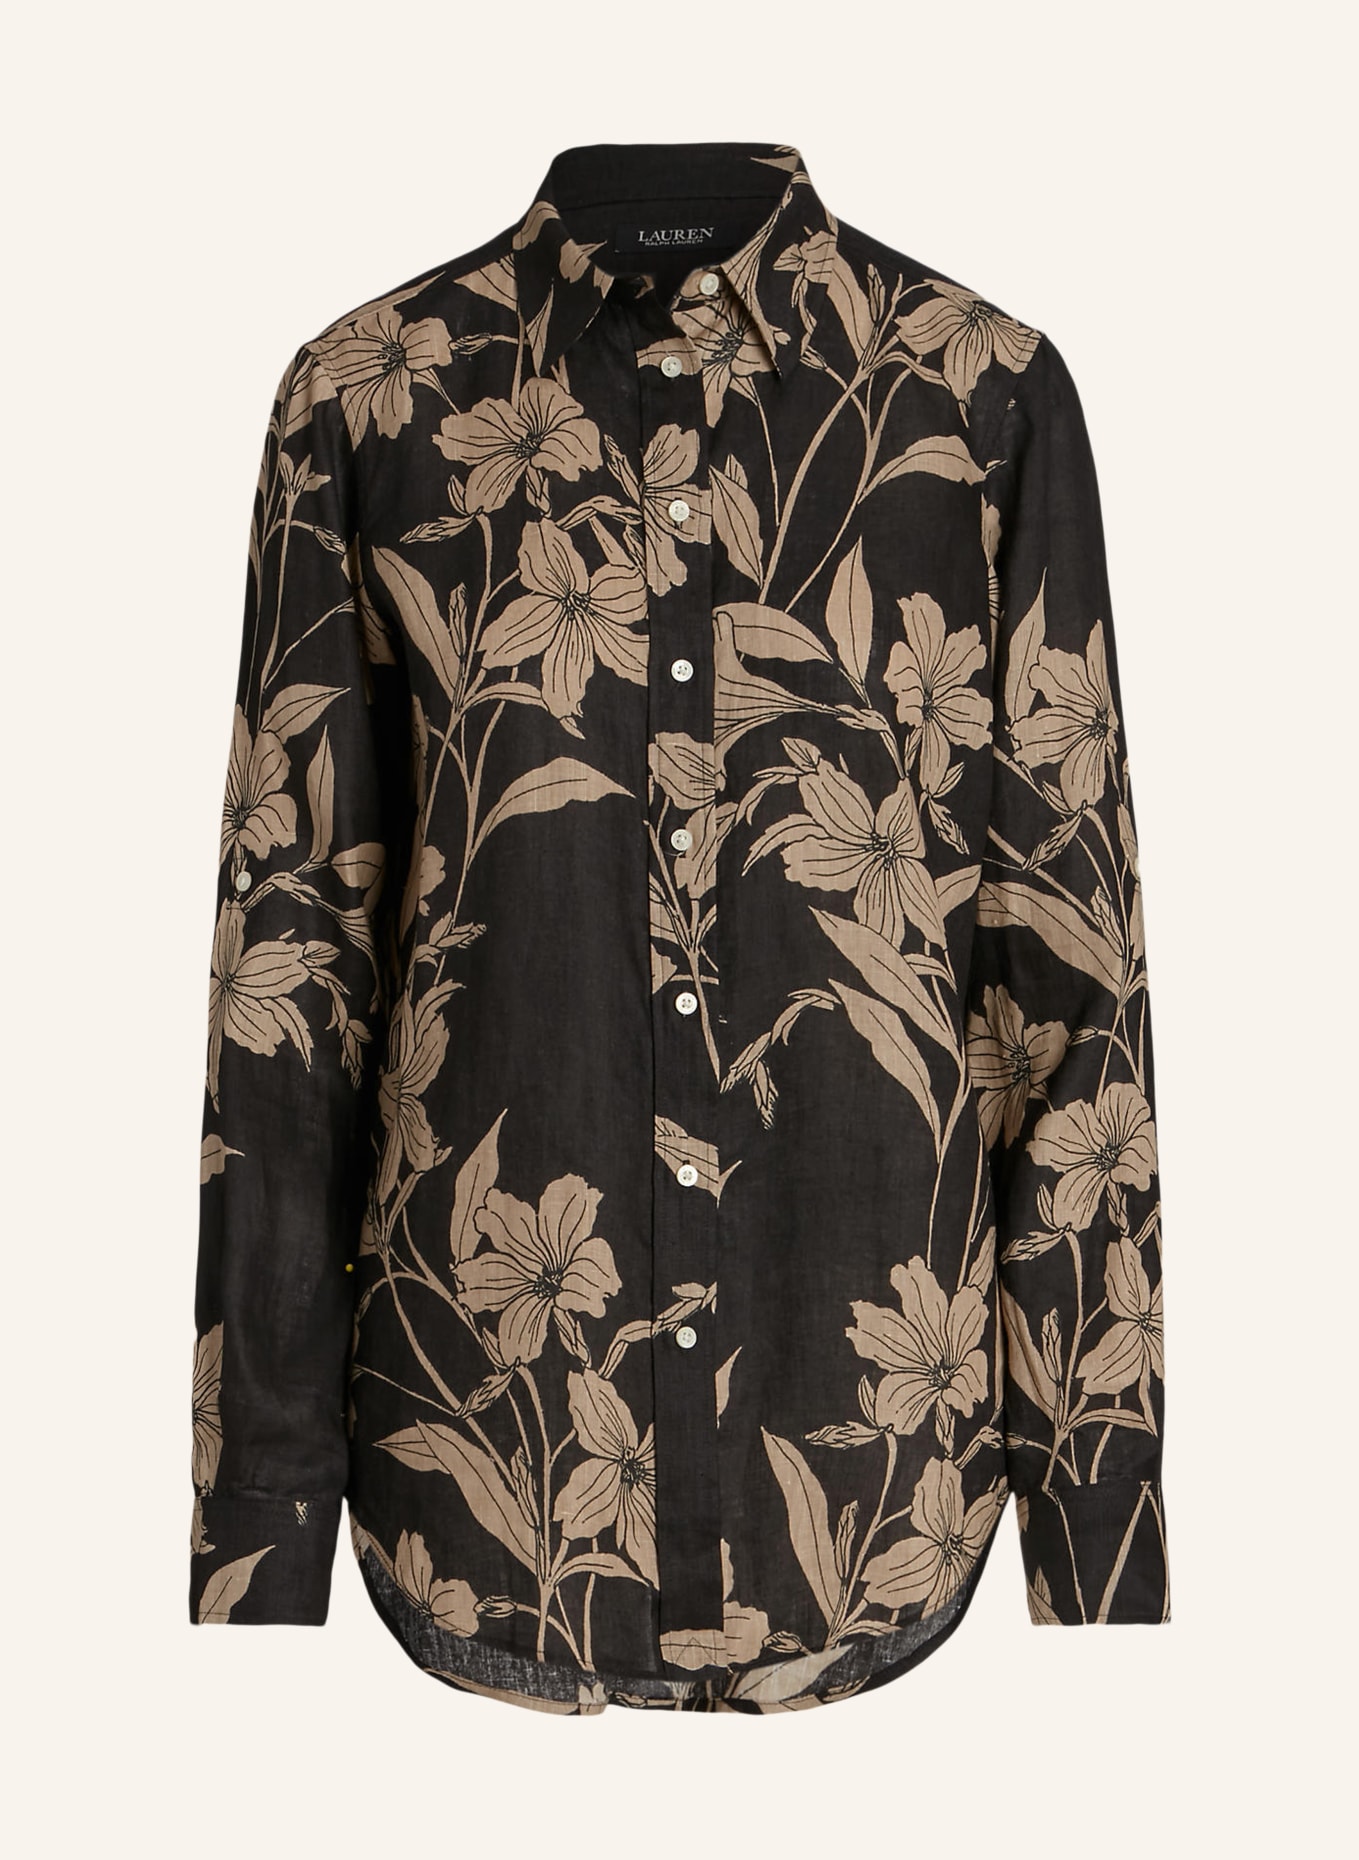 LAUREN RALPH LAUREN Shirt blouse made of linen, Color: BLACK/ BEIGE (Image 1)